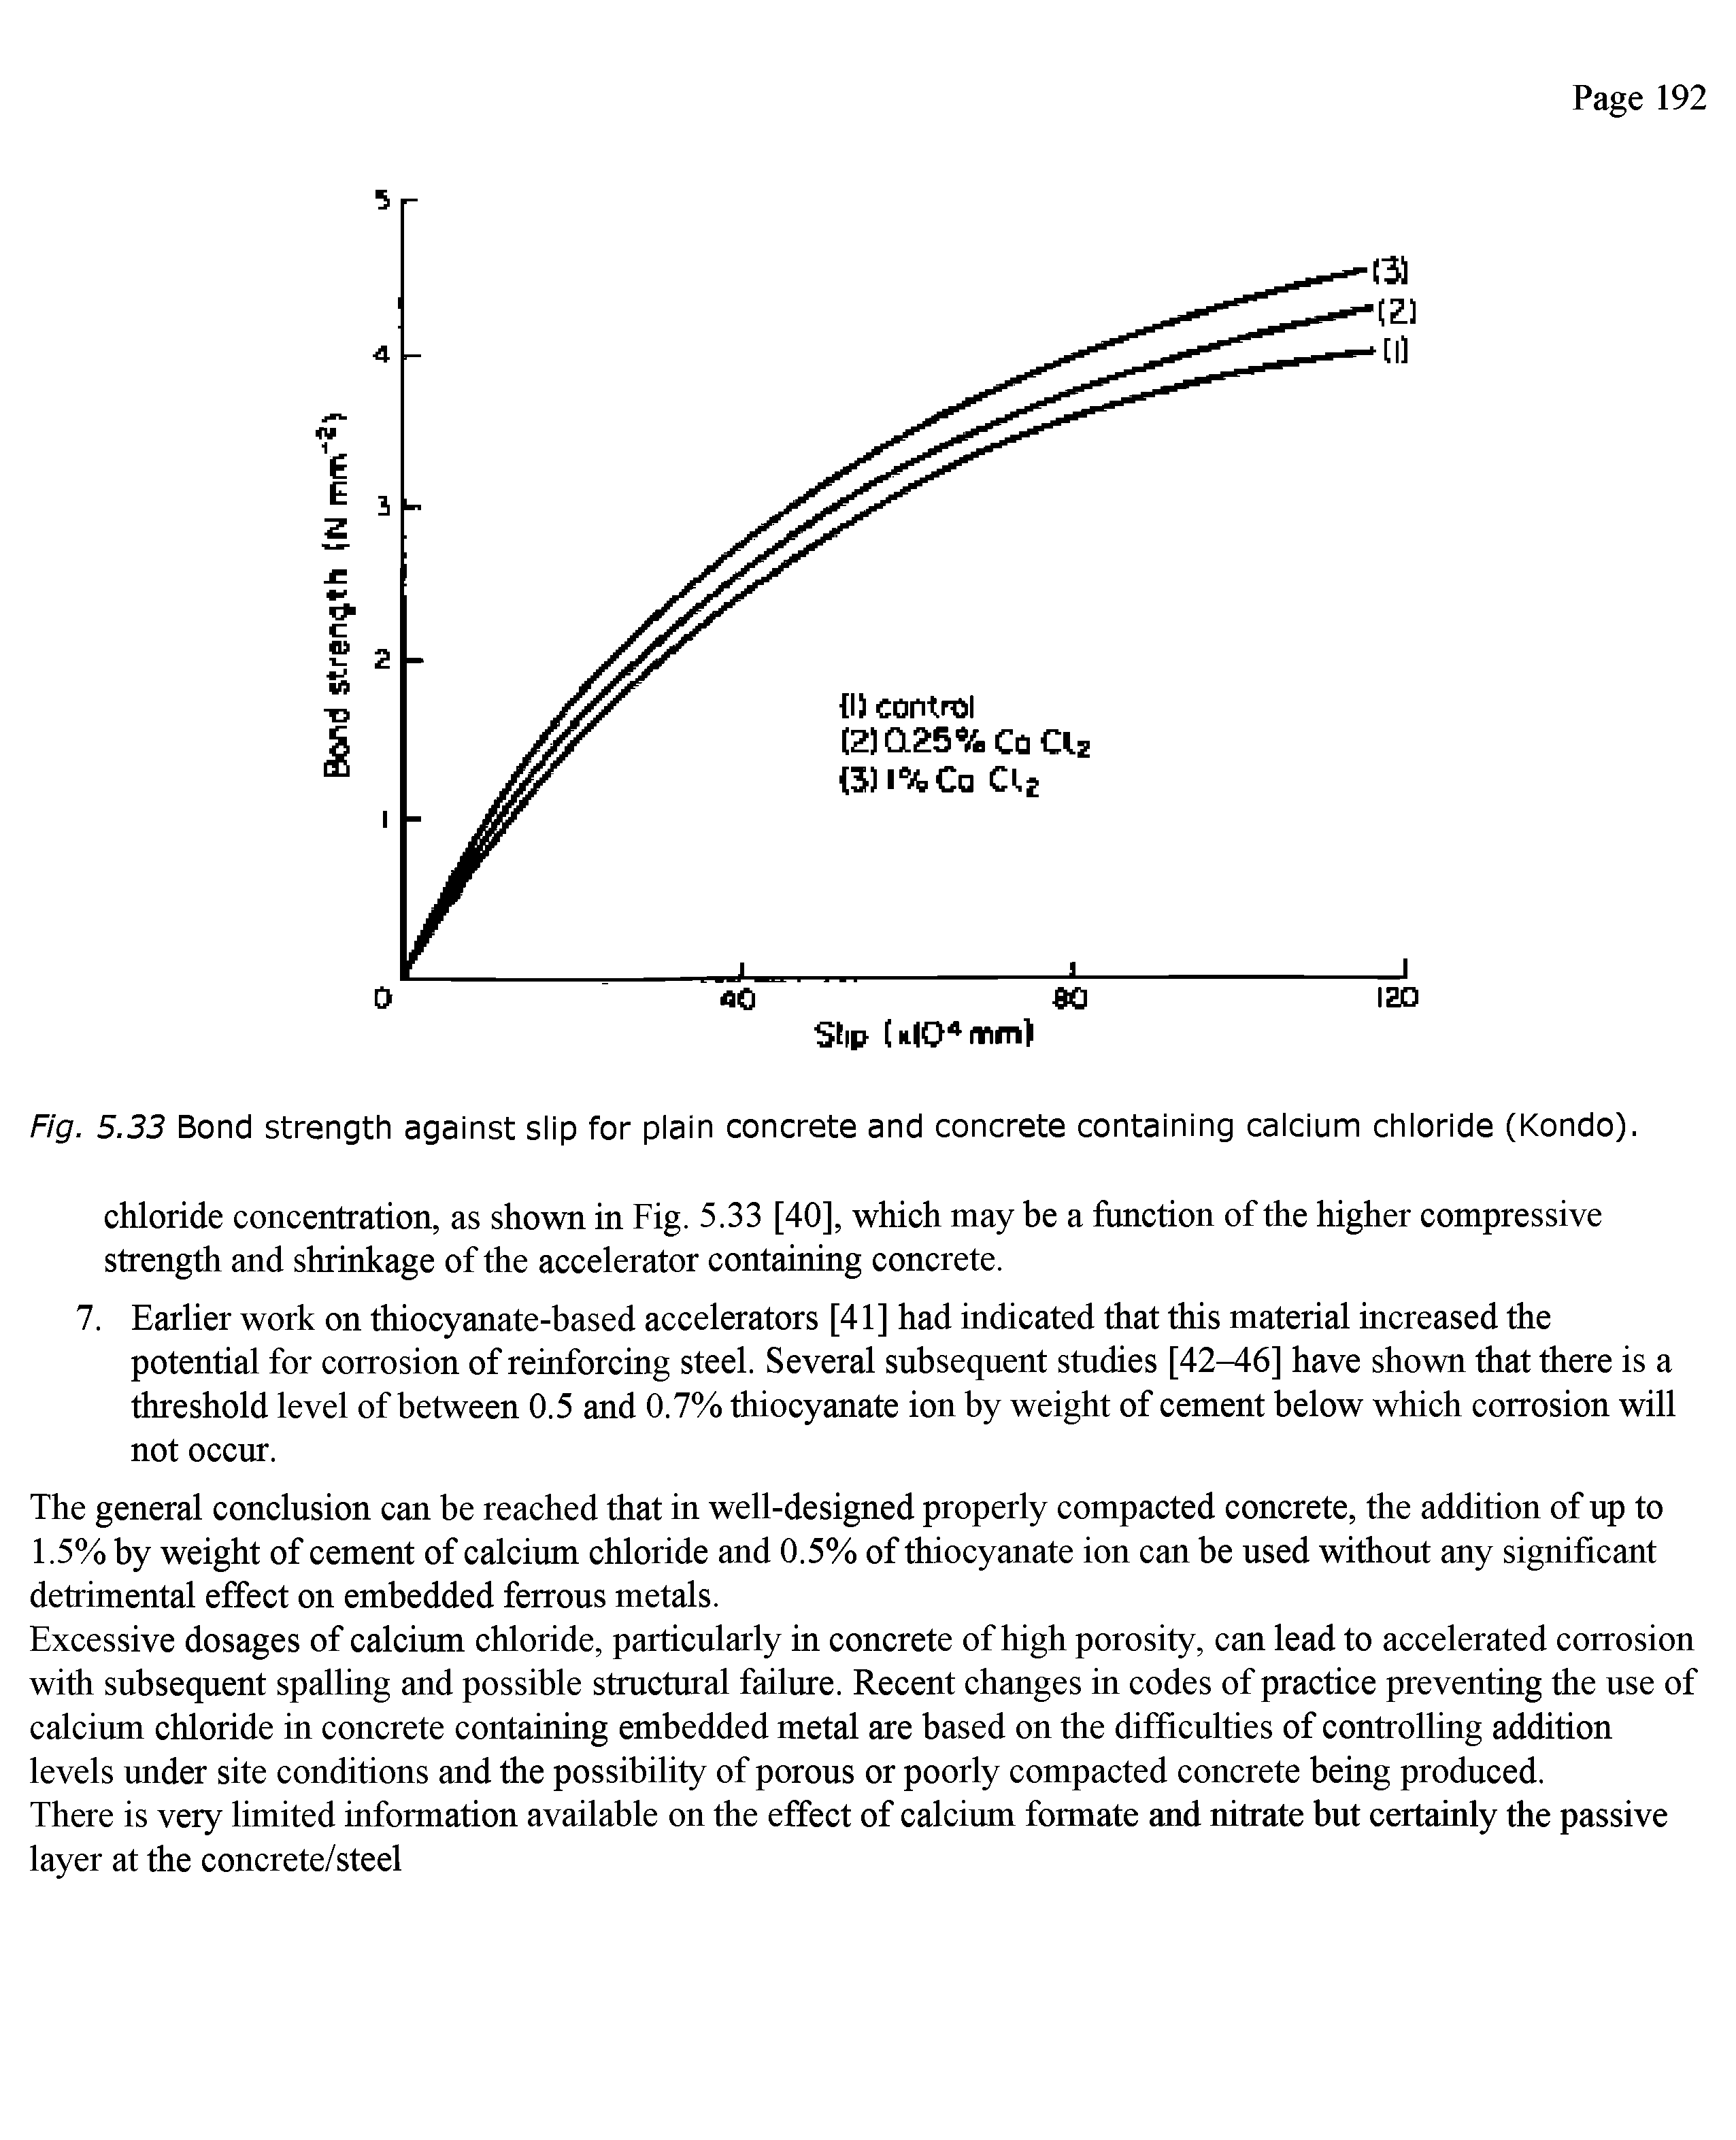 Fig. 5.33 Bond strength against slip for plain concrete and concrete containing calcium chloride (Kondo).